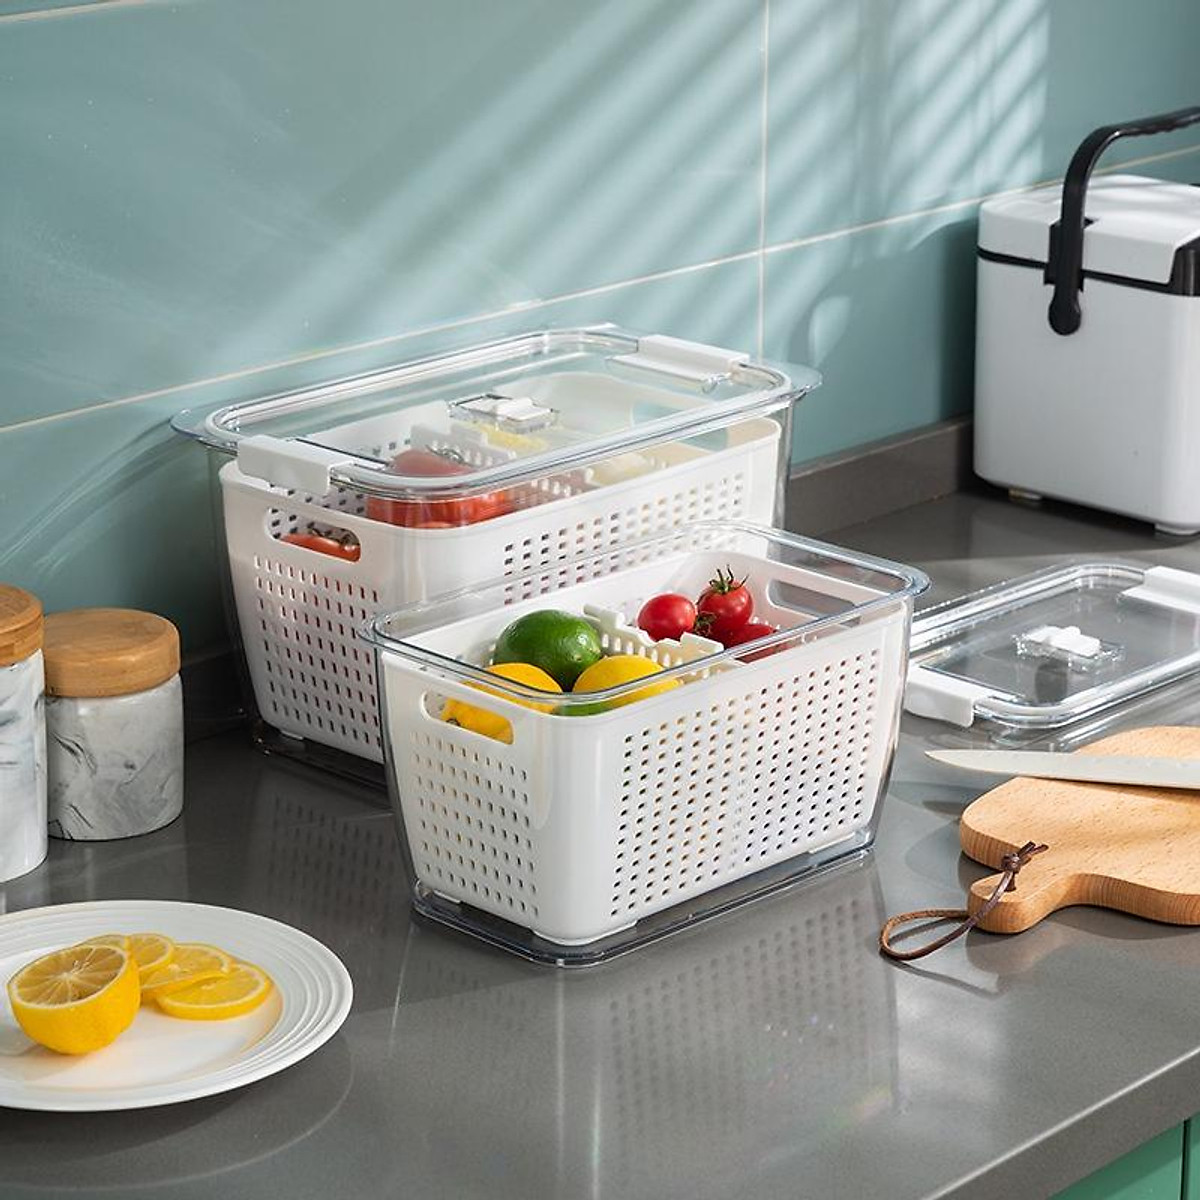 Bộ 2 hộp Hokori để và bảo quản thực phẩm trong tủ lạnh luôn tươi ngon thiết kế 2 lớp, bên trong là rổ, bên ngoài là hoojpj trong suốt, có nắp kín